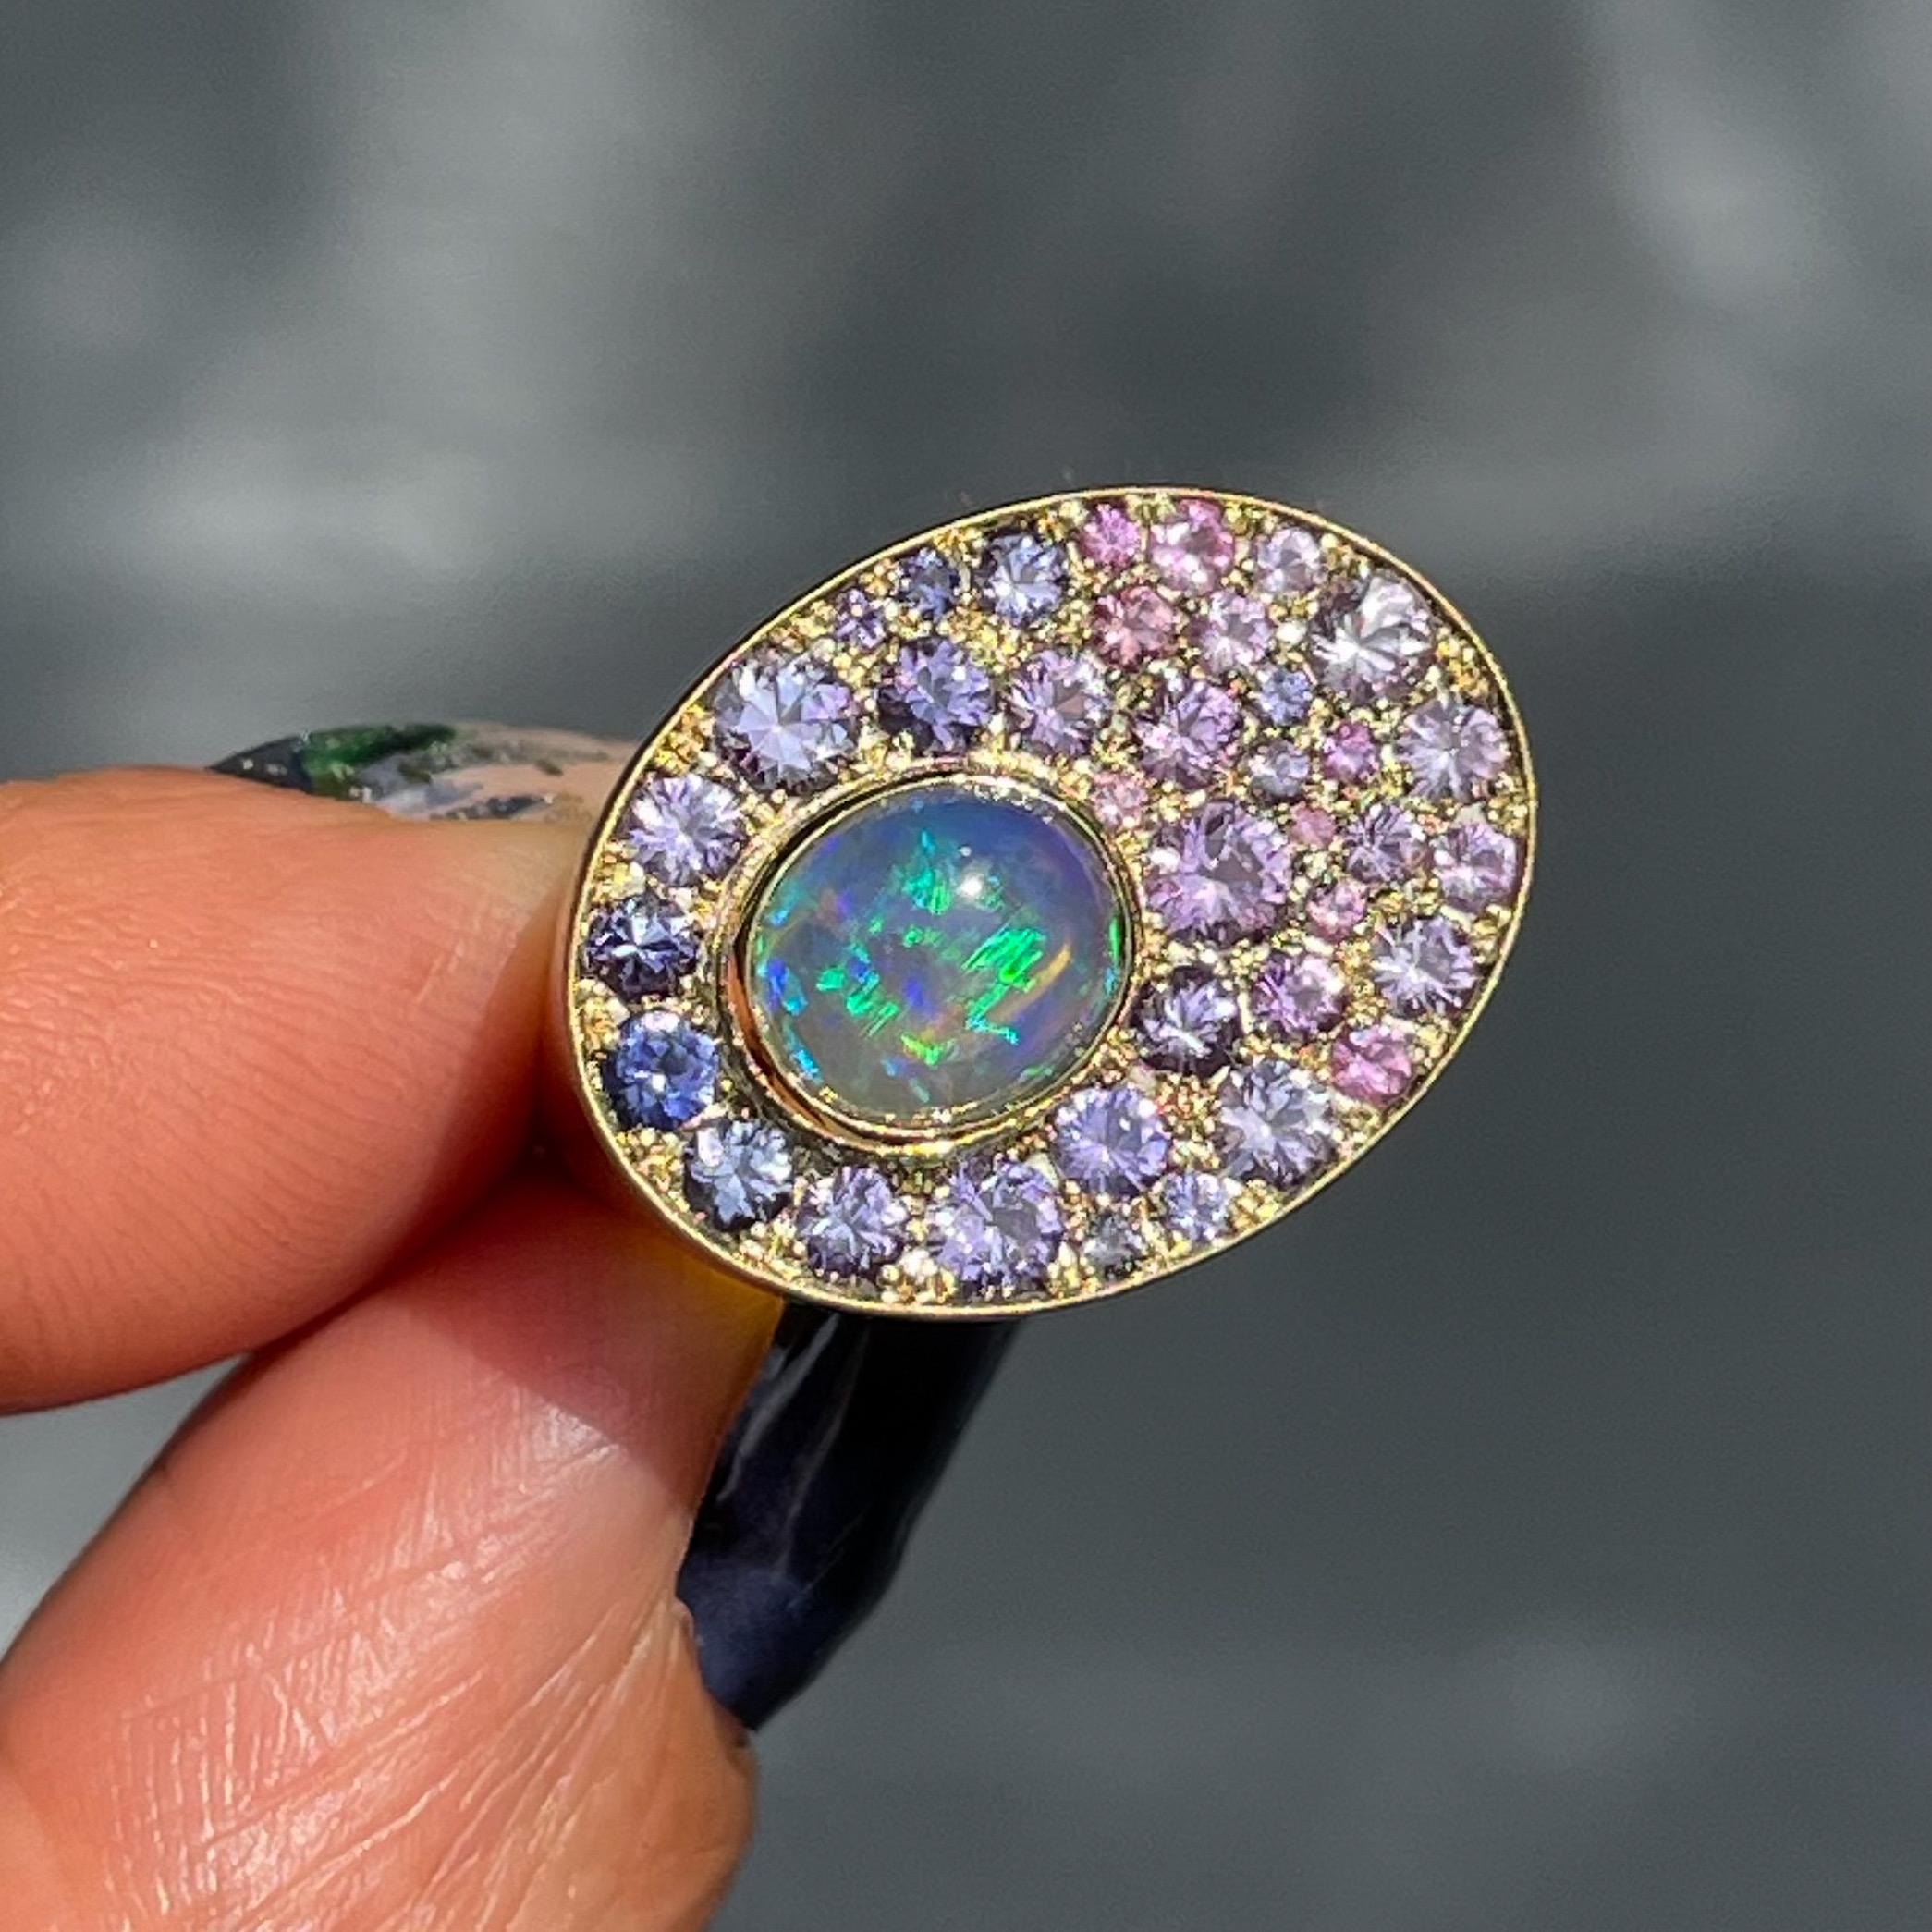 Sur cette bague en opale australienne, une opale cristalline émerge d'un pâturage de saphirs. Comme une couverture de gazon chatoyant, les saphirs roses et violets diffusent leurs teintes autour de l'opale dans un motif ombré fluide. Allant du rose